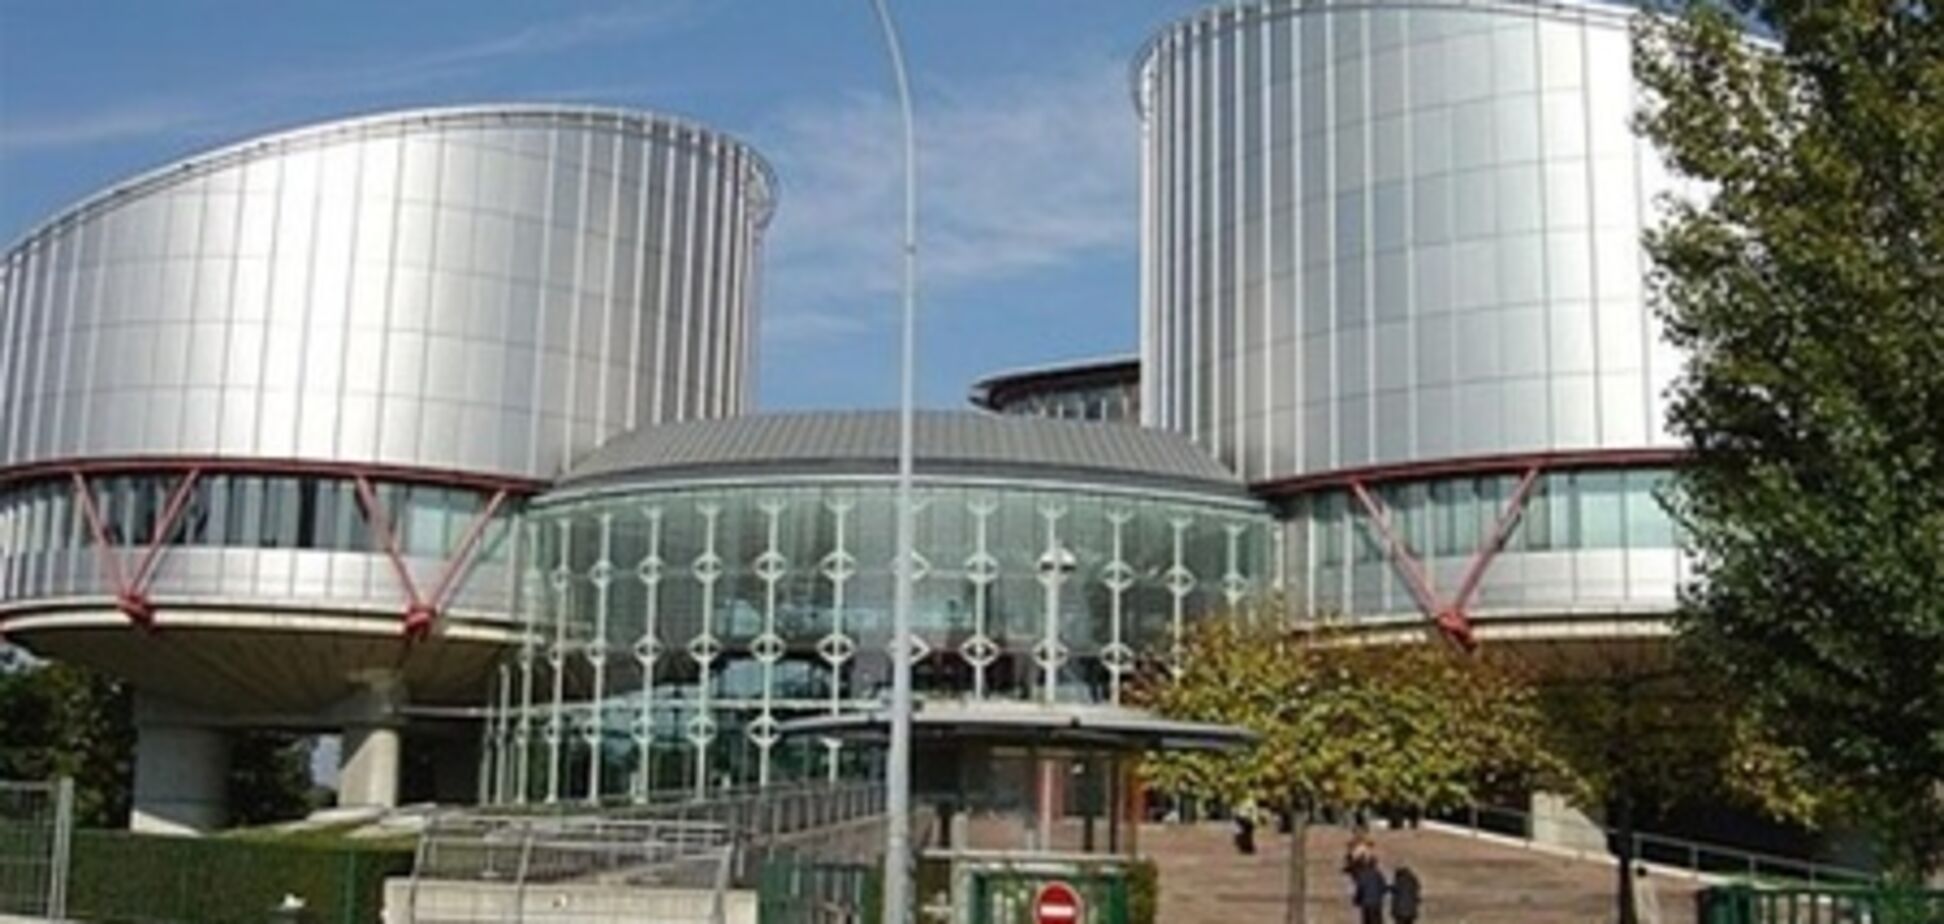 Євросуд зобов'язав виплатити 40 тис. євро жертві катувань у міліції